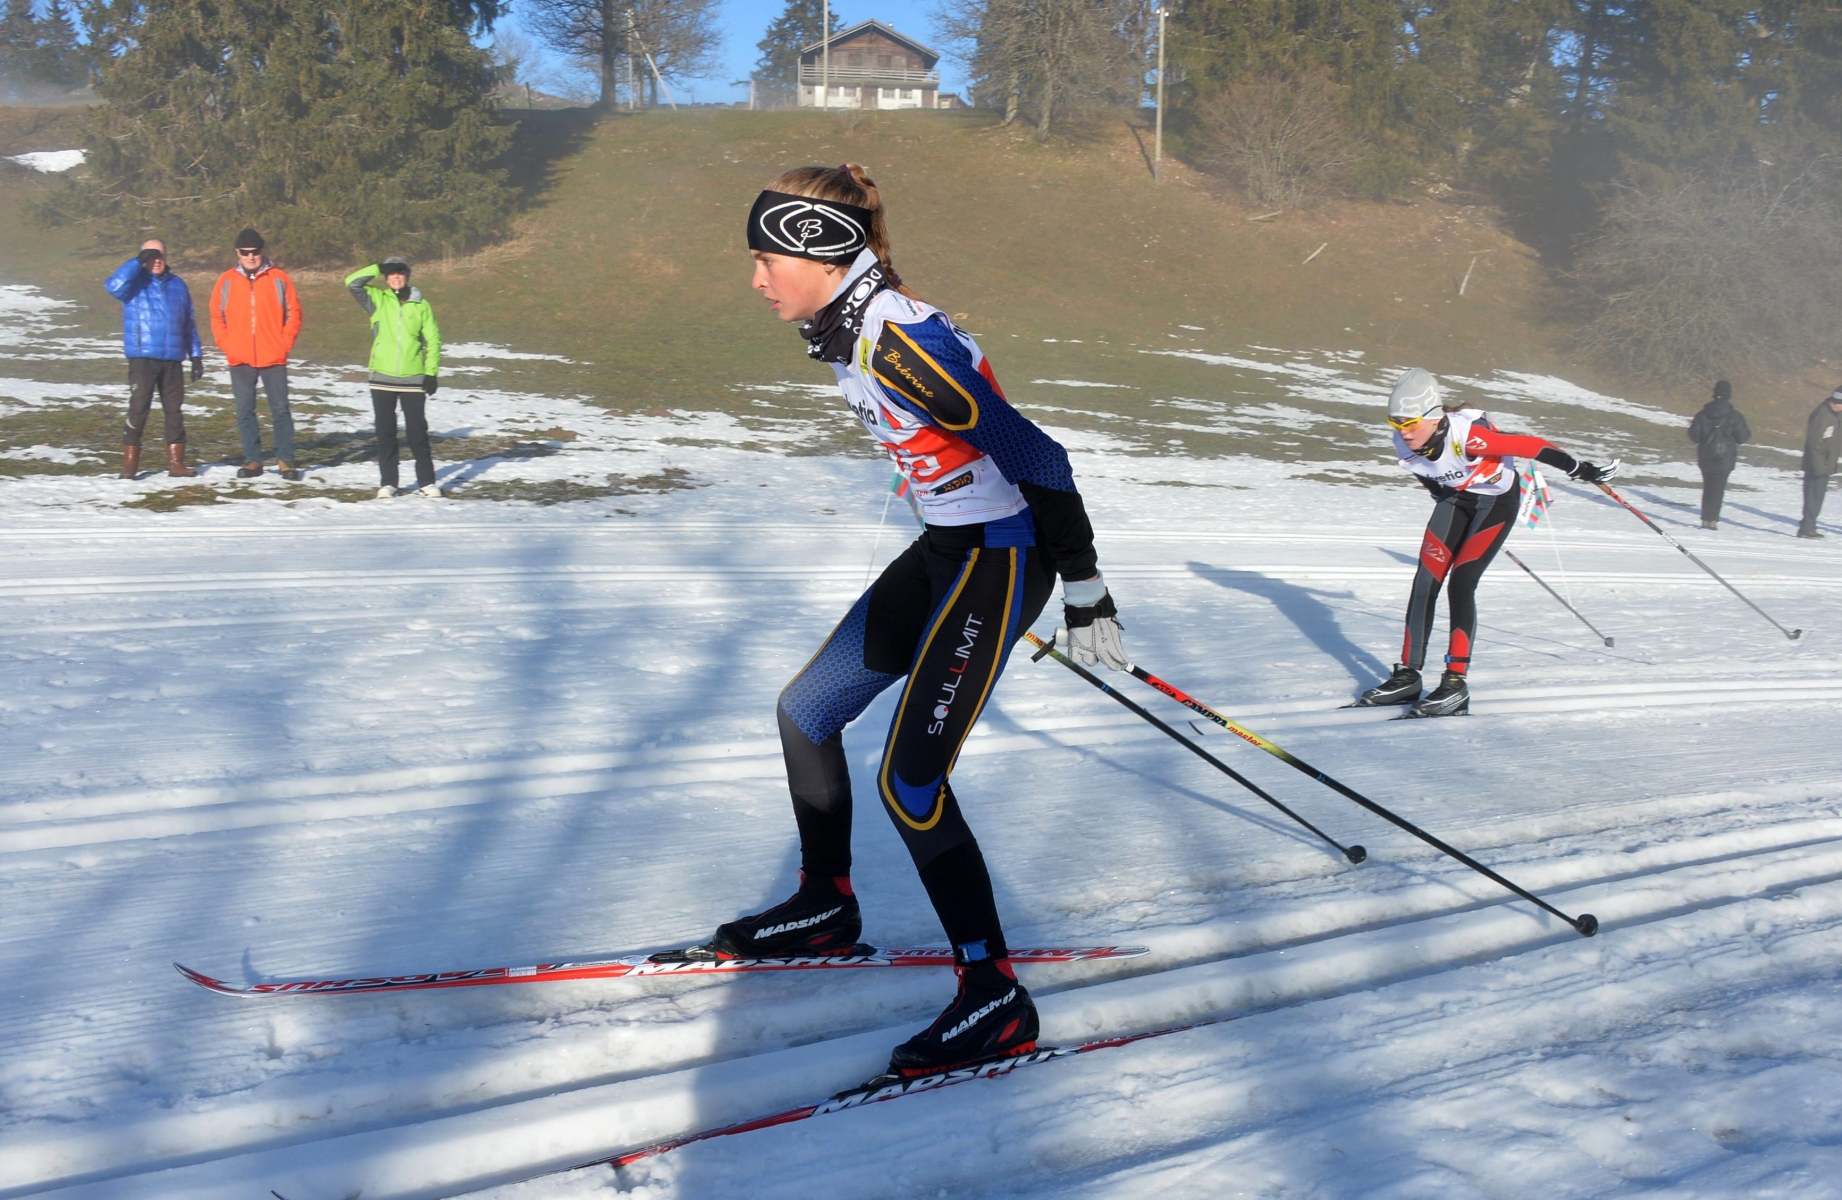 Helvetia Nordic Trophy pour les 6 a 16 ans, ici la breviniere Prisca Schneider

La Vue-des-Alpes 12 janvier 2014
Photo R Leuenberger